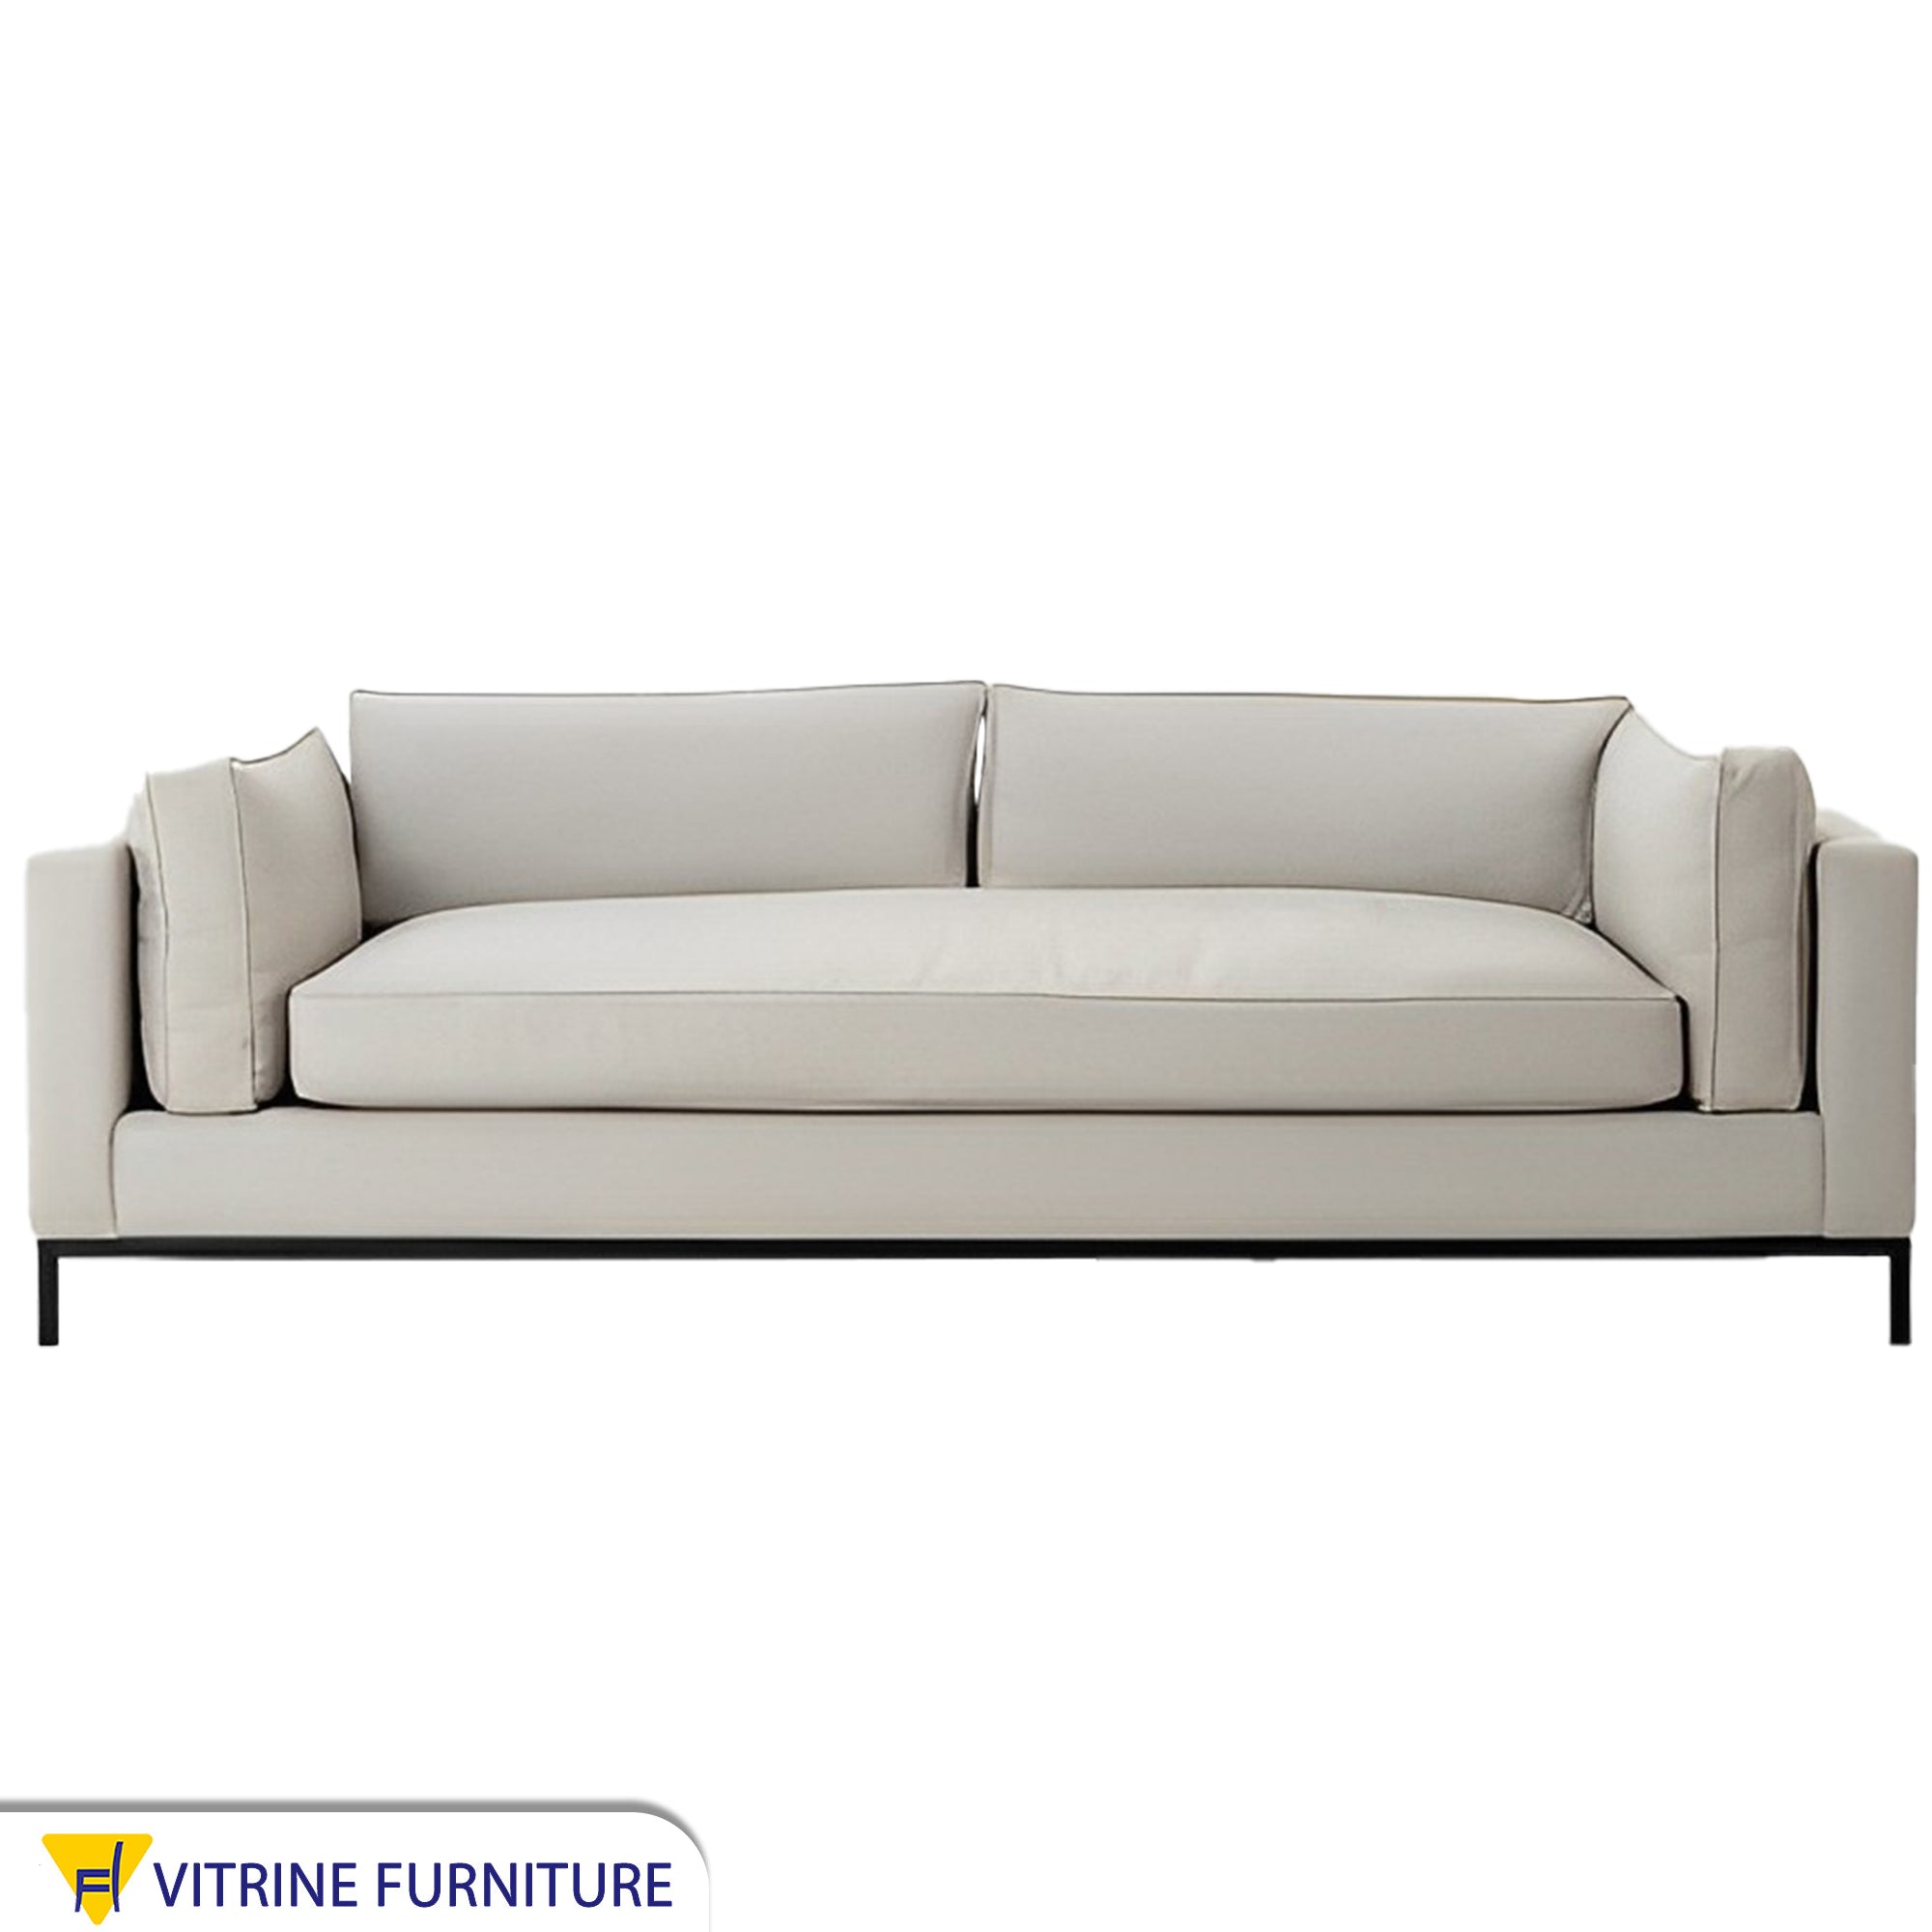 Elegant white sofa